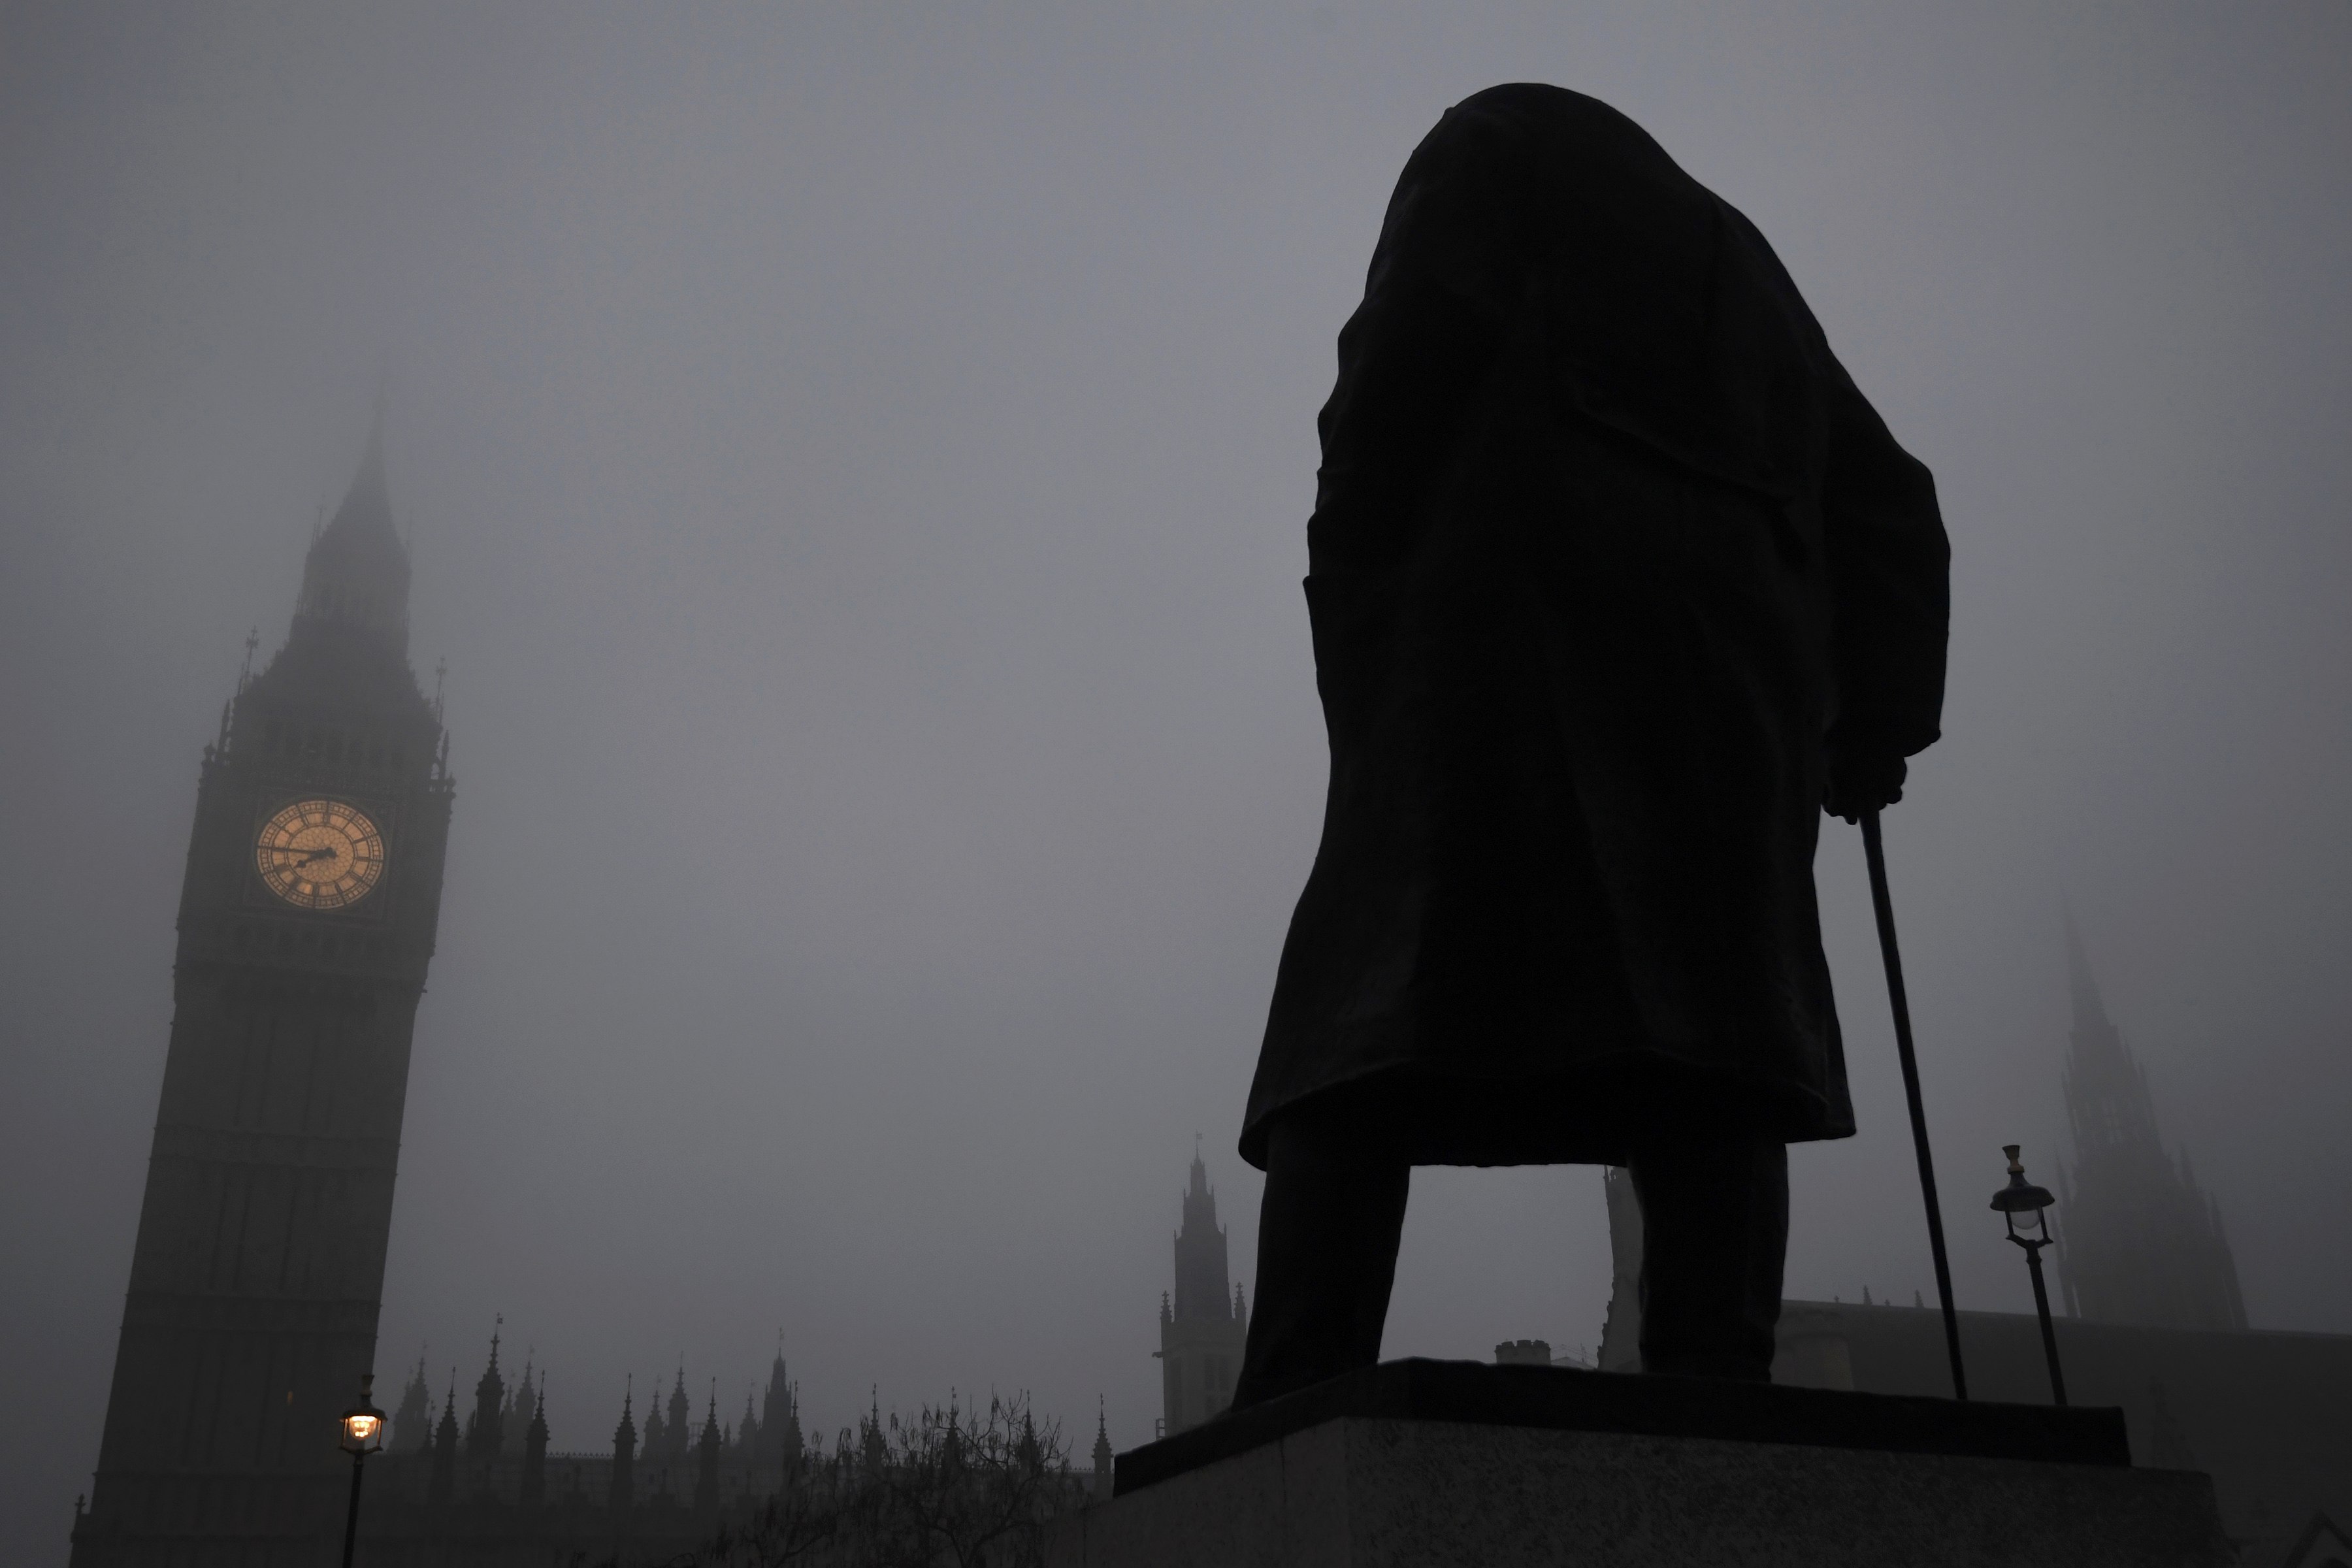 الضباب يحيط بتمثال ونستون تشرشل أمام ساعة بيج بن ومبنى البرلمان فى لندن